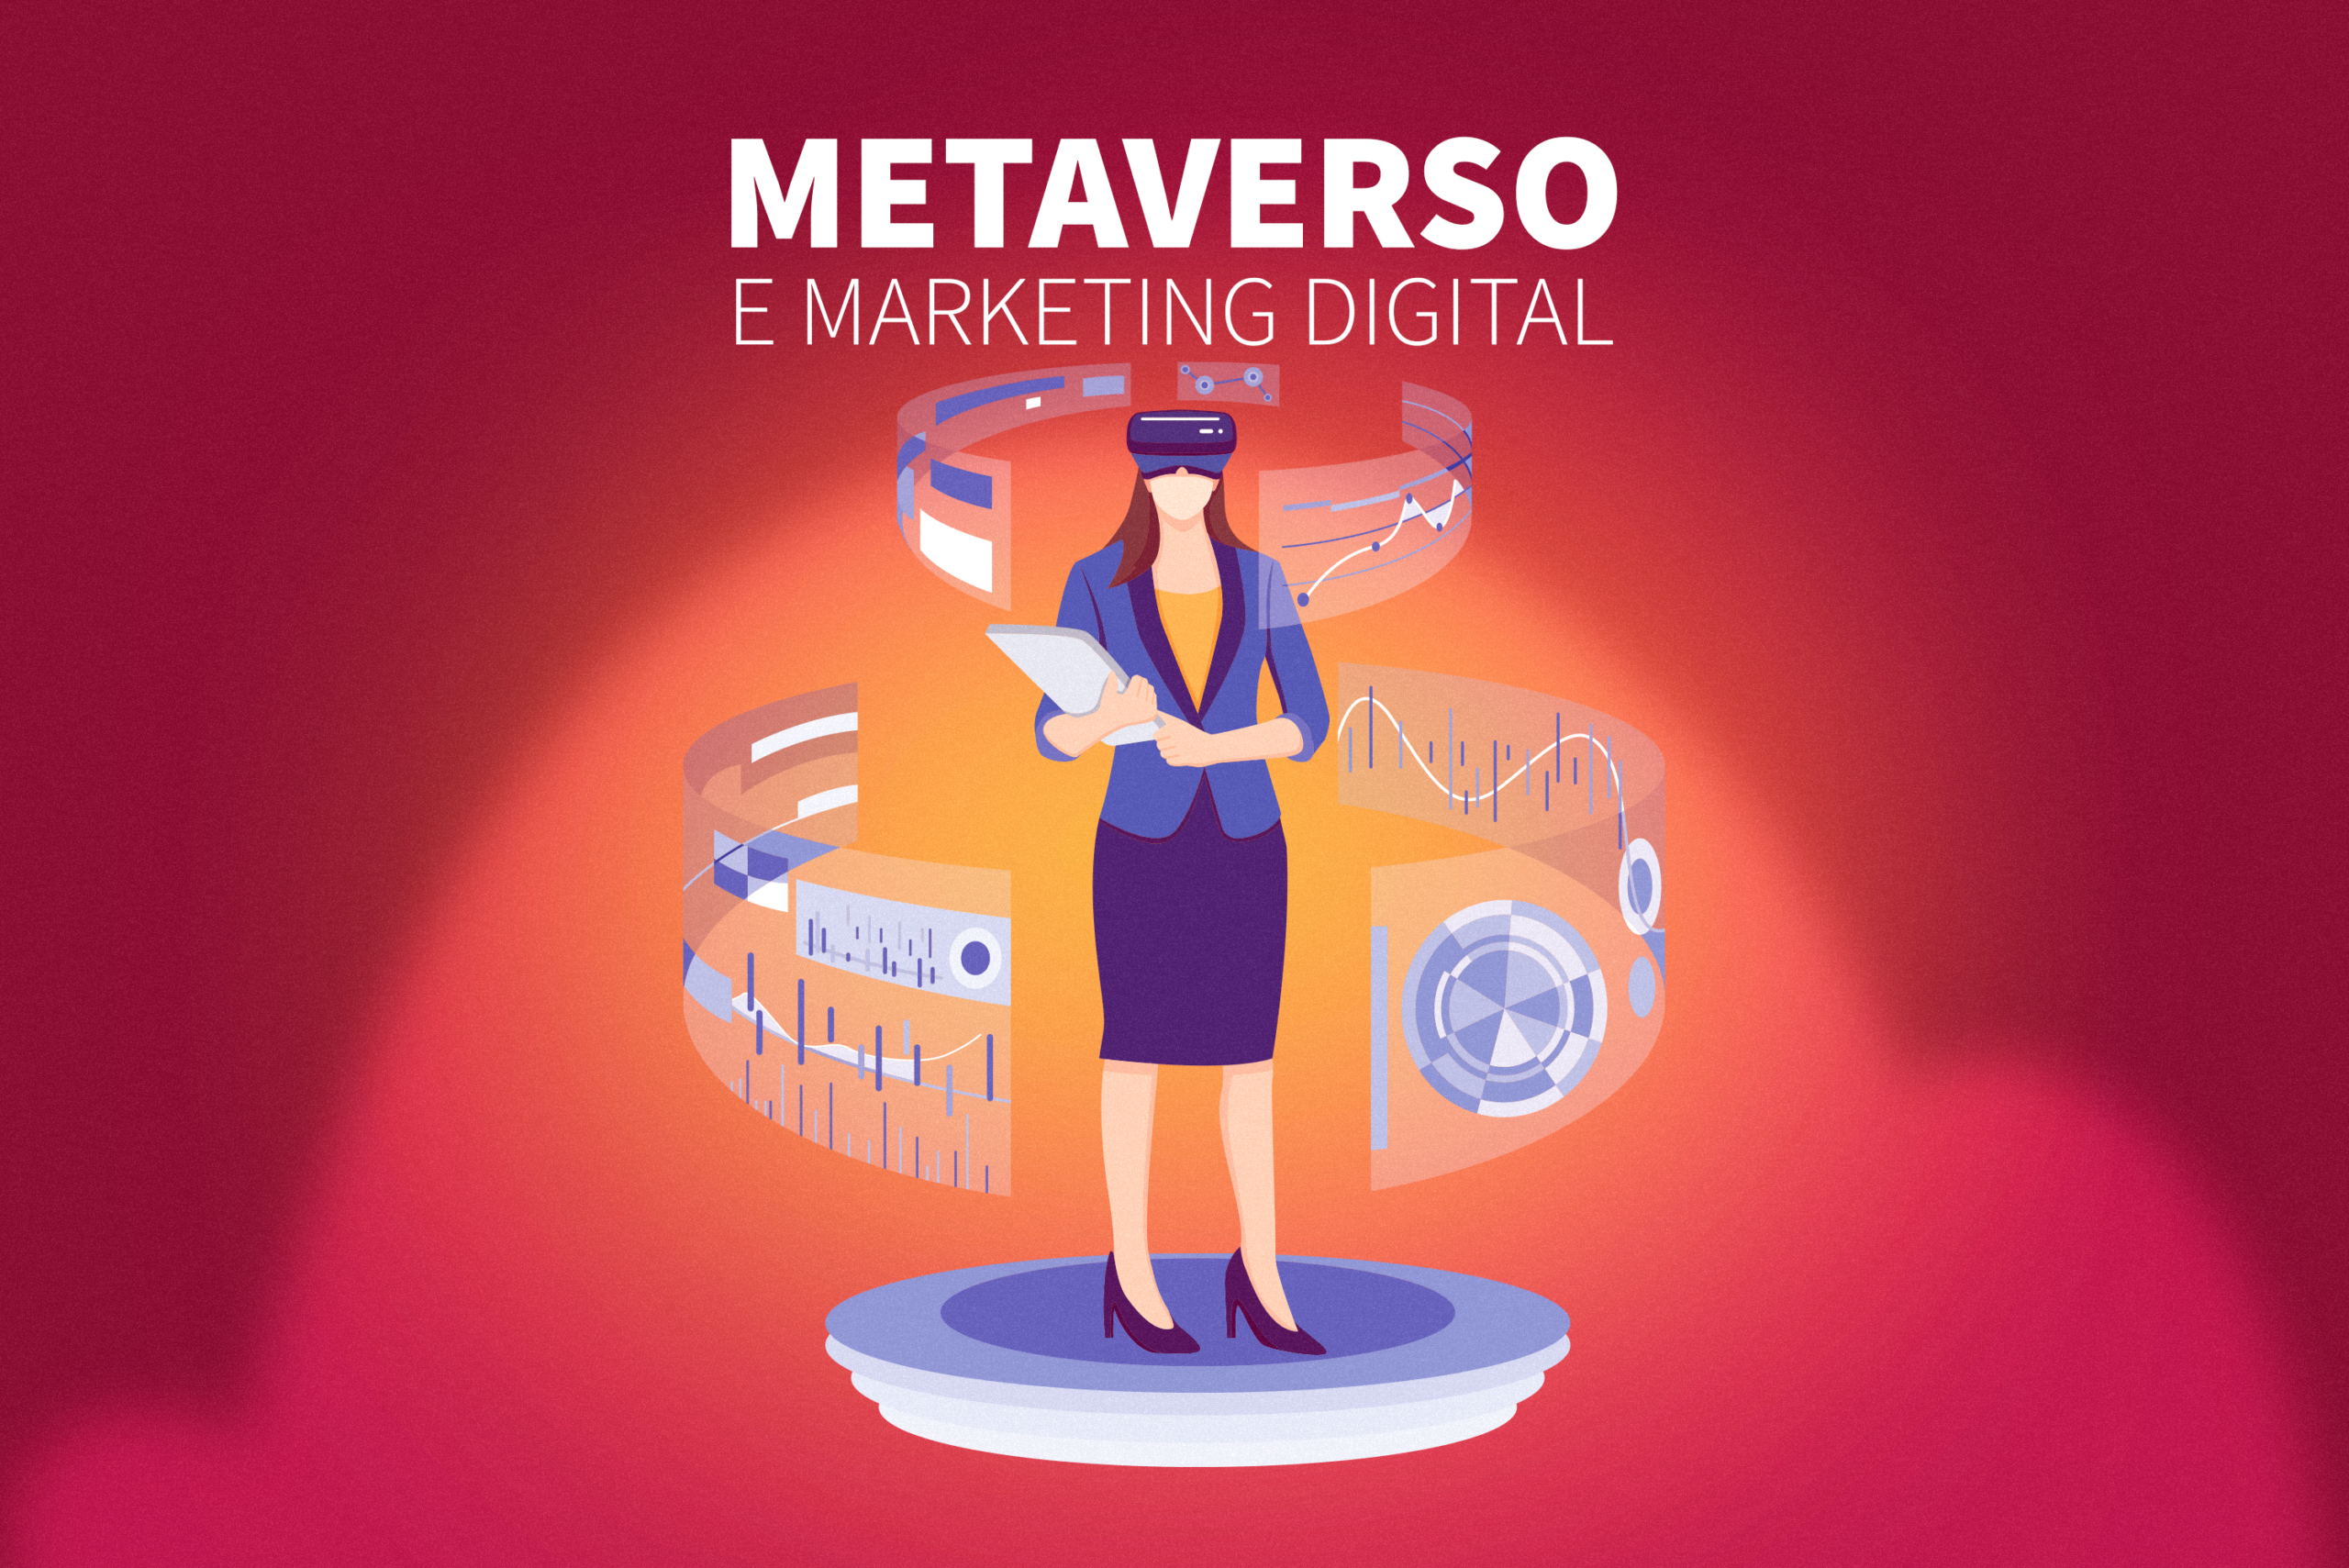 Metaverso o que é e como funciona? - Personal Marketing Digital